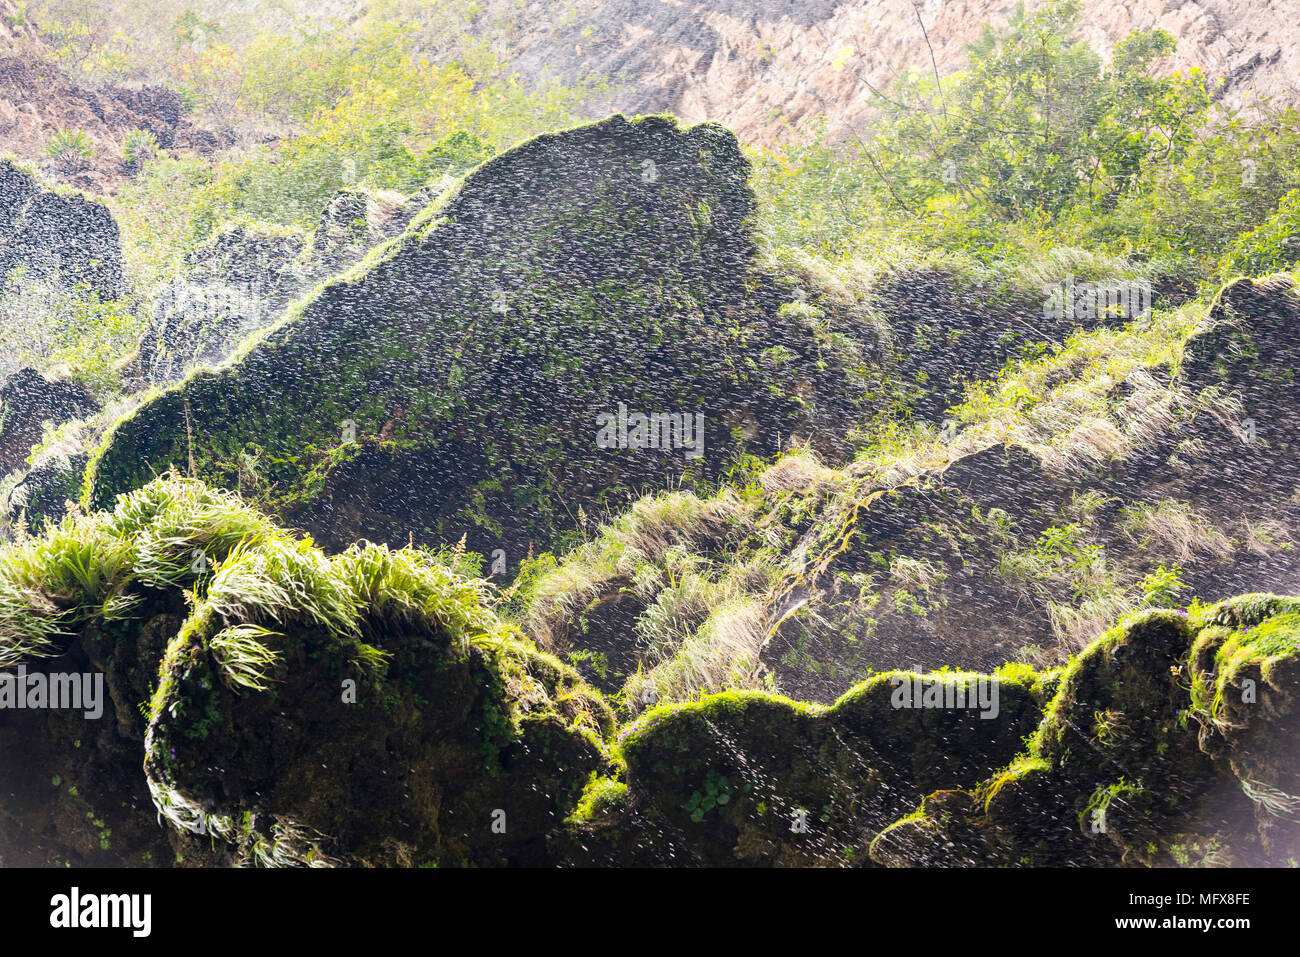 Brume sur mousse verte à partir d'une chute d'une falaise dans le Canyon du Sumidero Chiapas, Mexique Banque D'Images